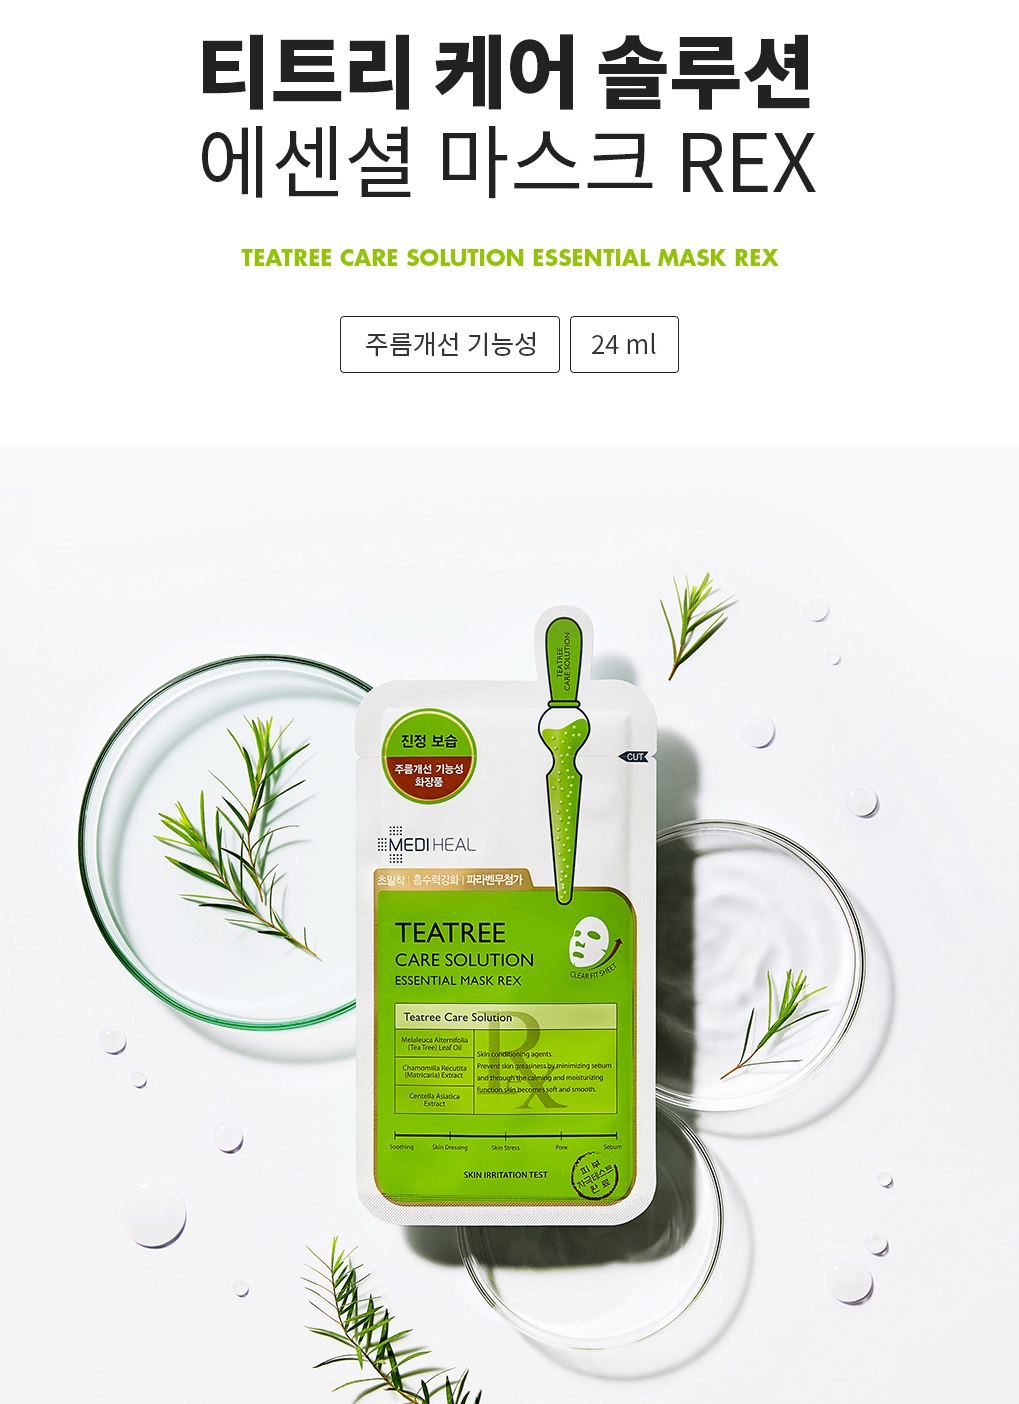 Mặt nạ tinh chất trà xanh Mediheal Teatree Care Solution Essential Mask REX 24ml (11 miếng)